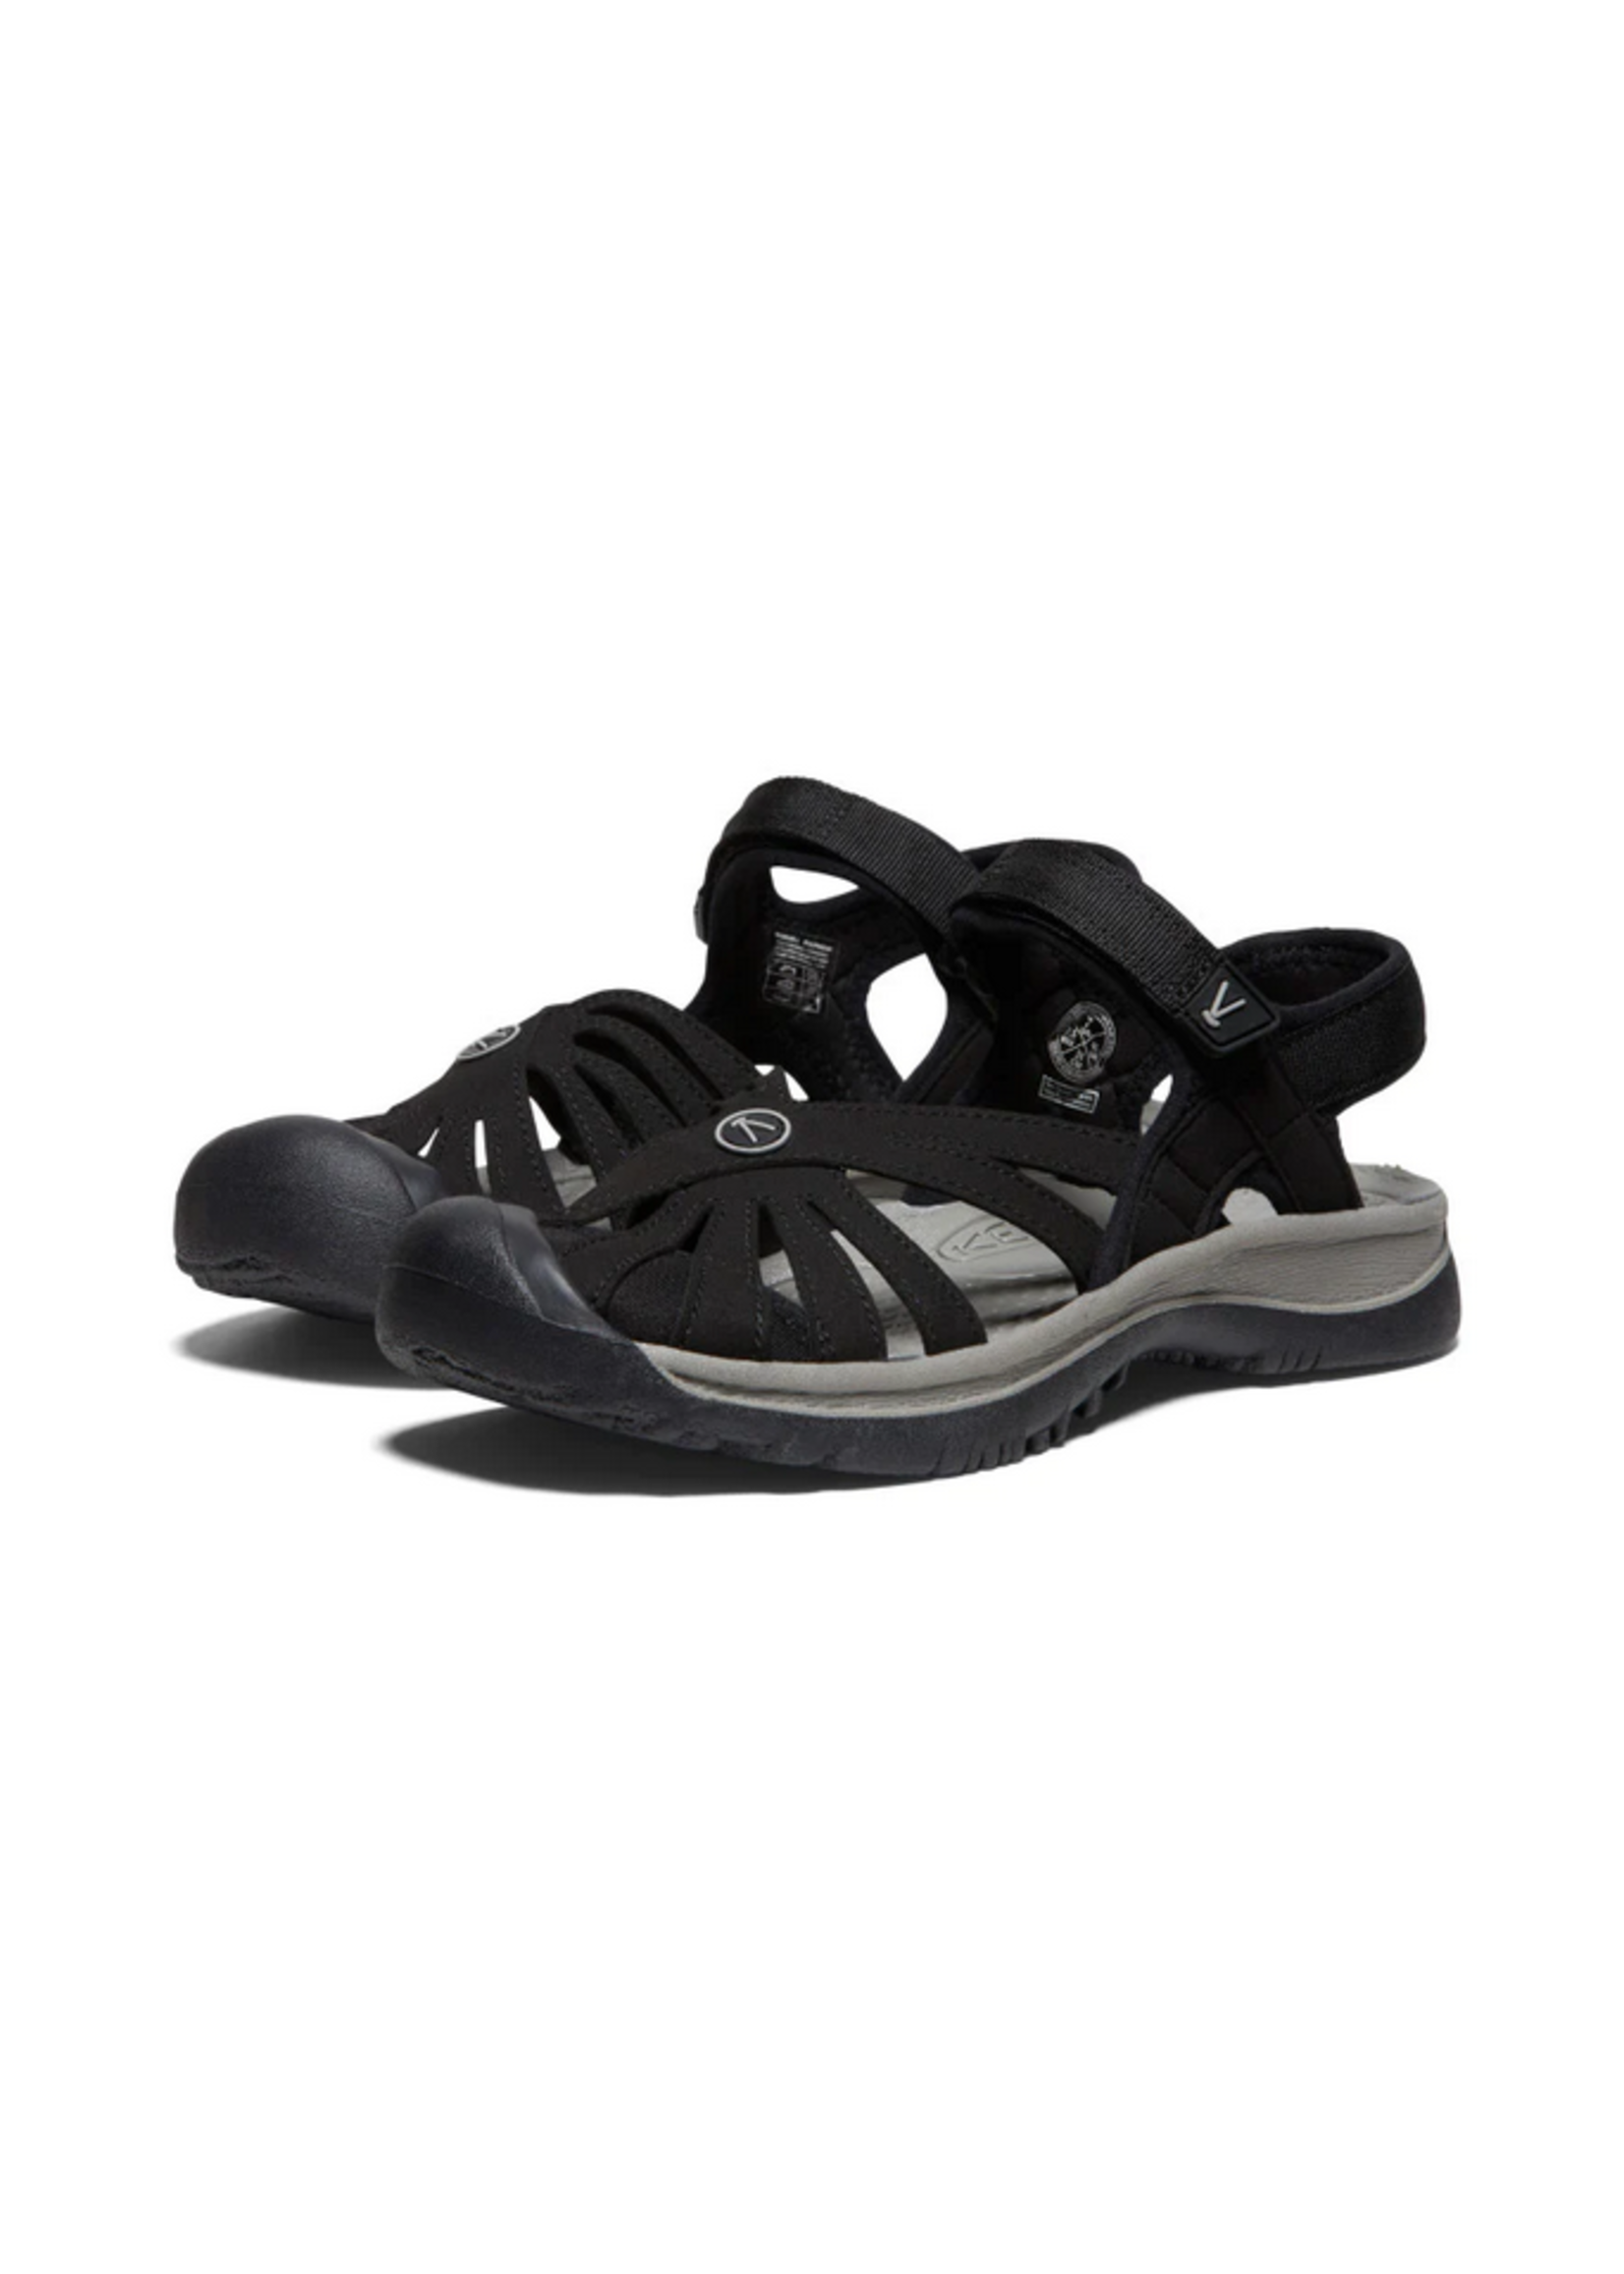 Keen Rose Sandals - Lucha's Comfort Footwear